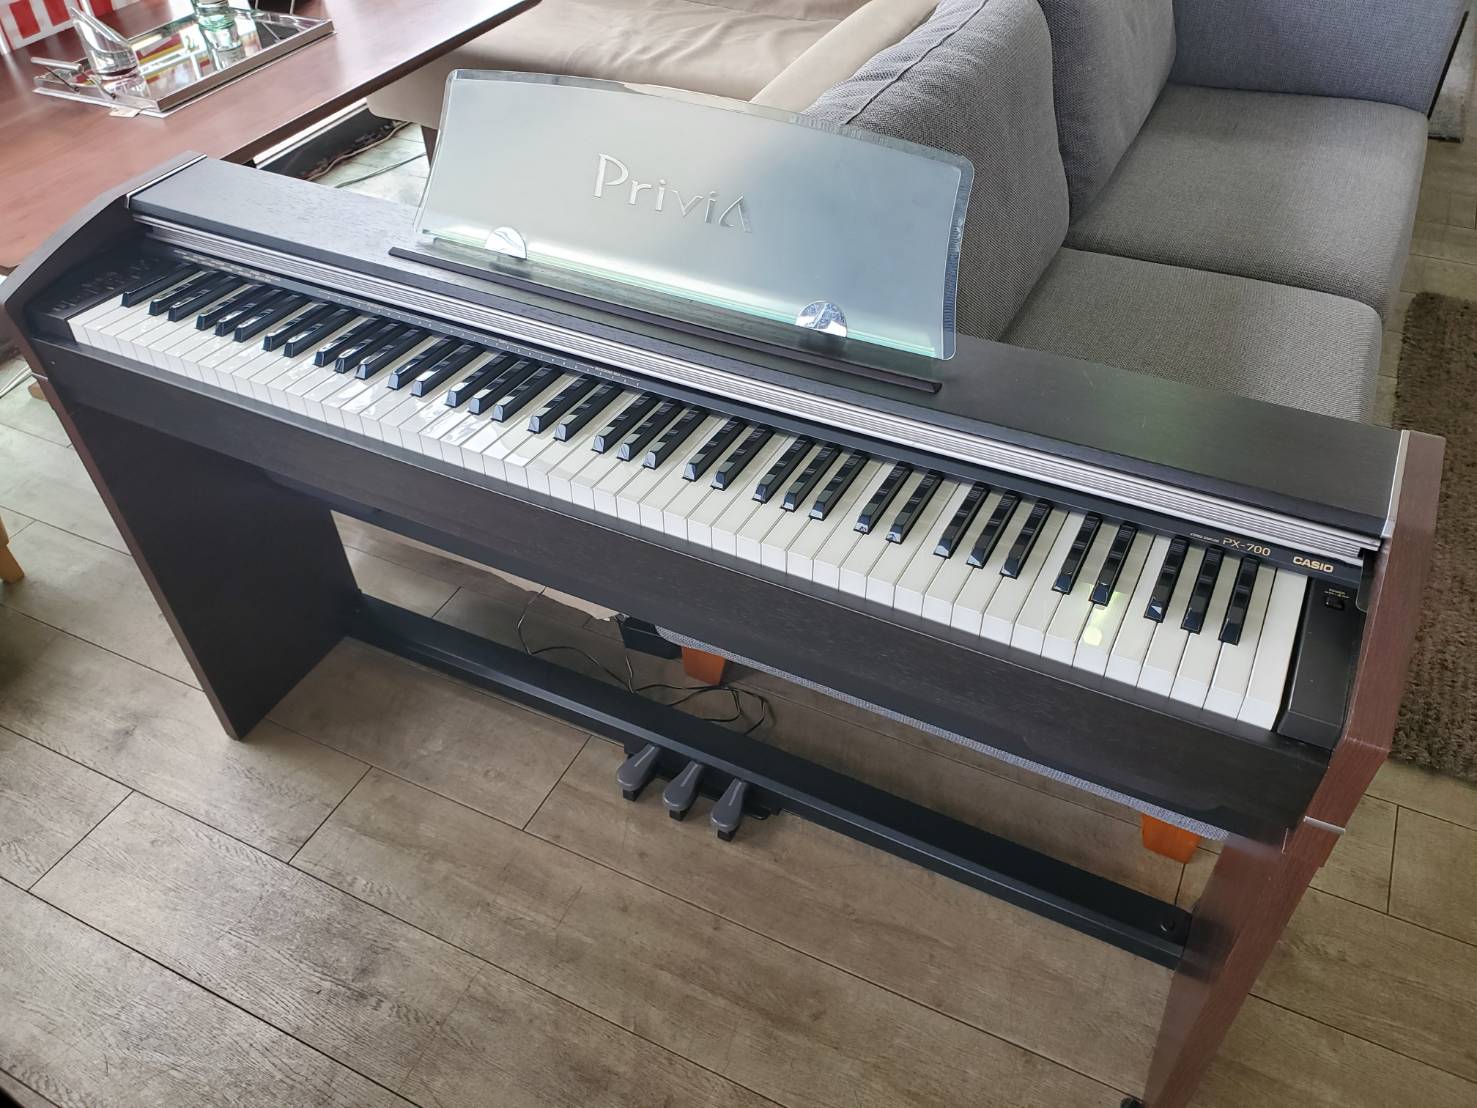 ☆CASIO カシオ 電子ピアノ Privia プリヴィア PX-700 スタンド一体型 ピアノ デジタルピアノ 買取しました☆ |  愛知と岐阜のリサイクルショップ 再良市場